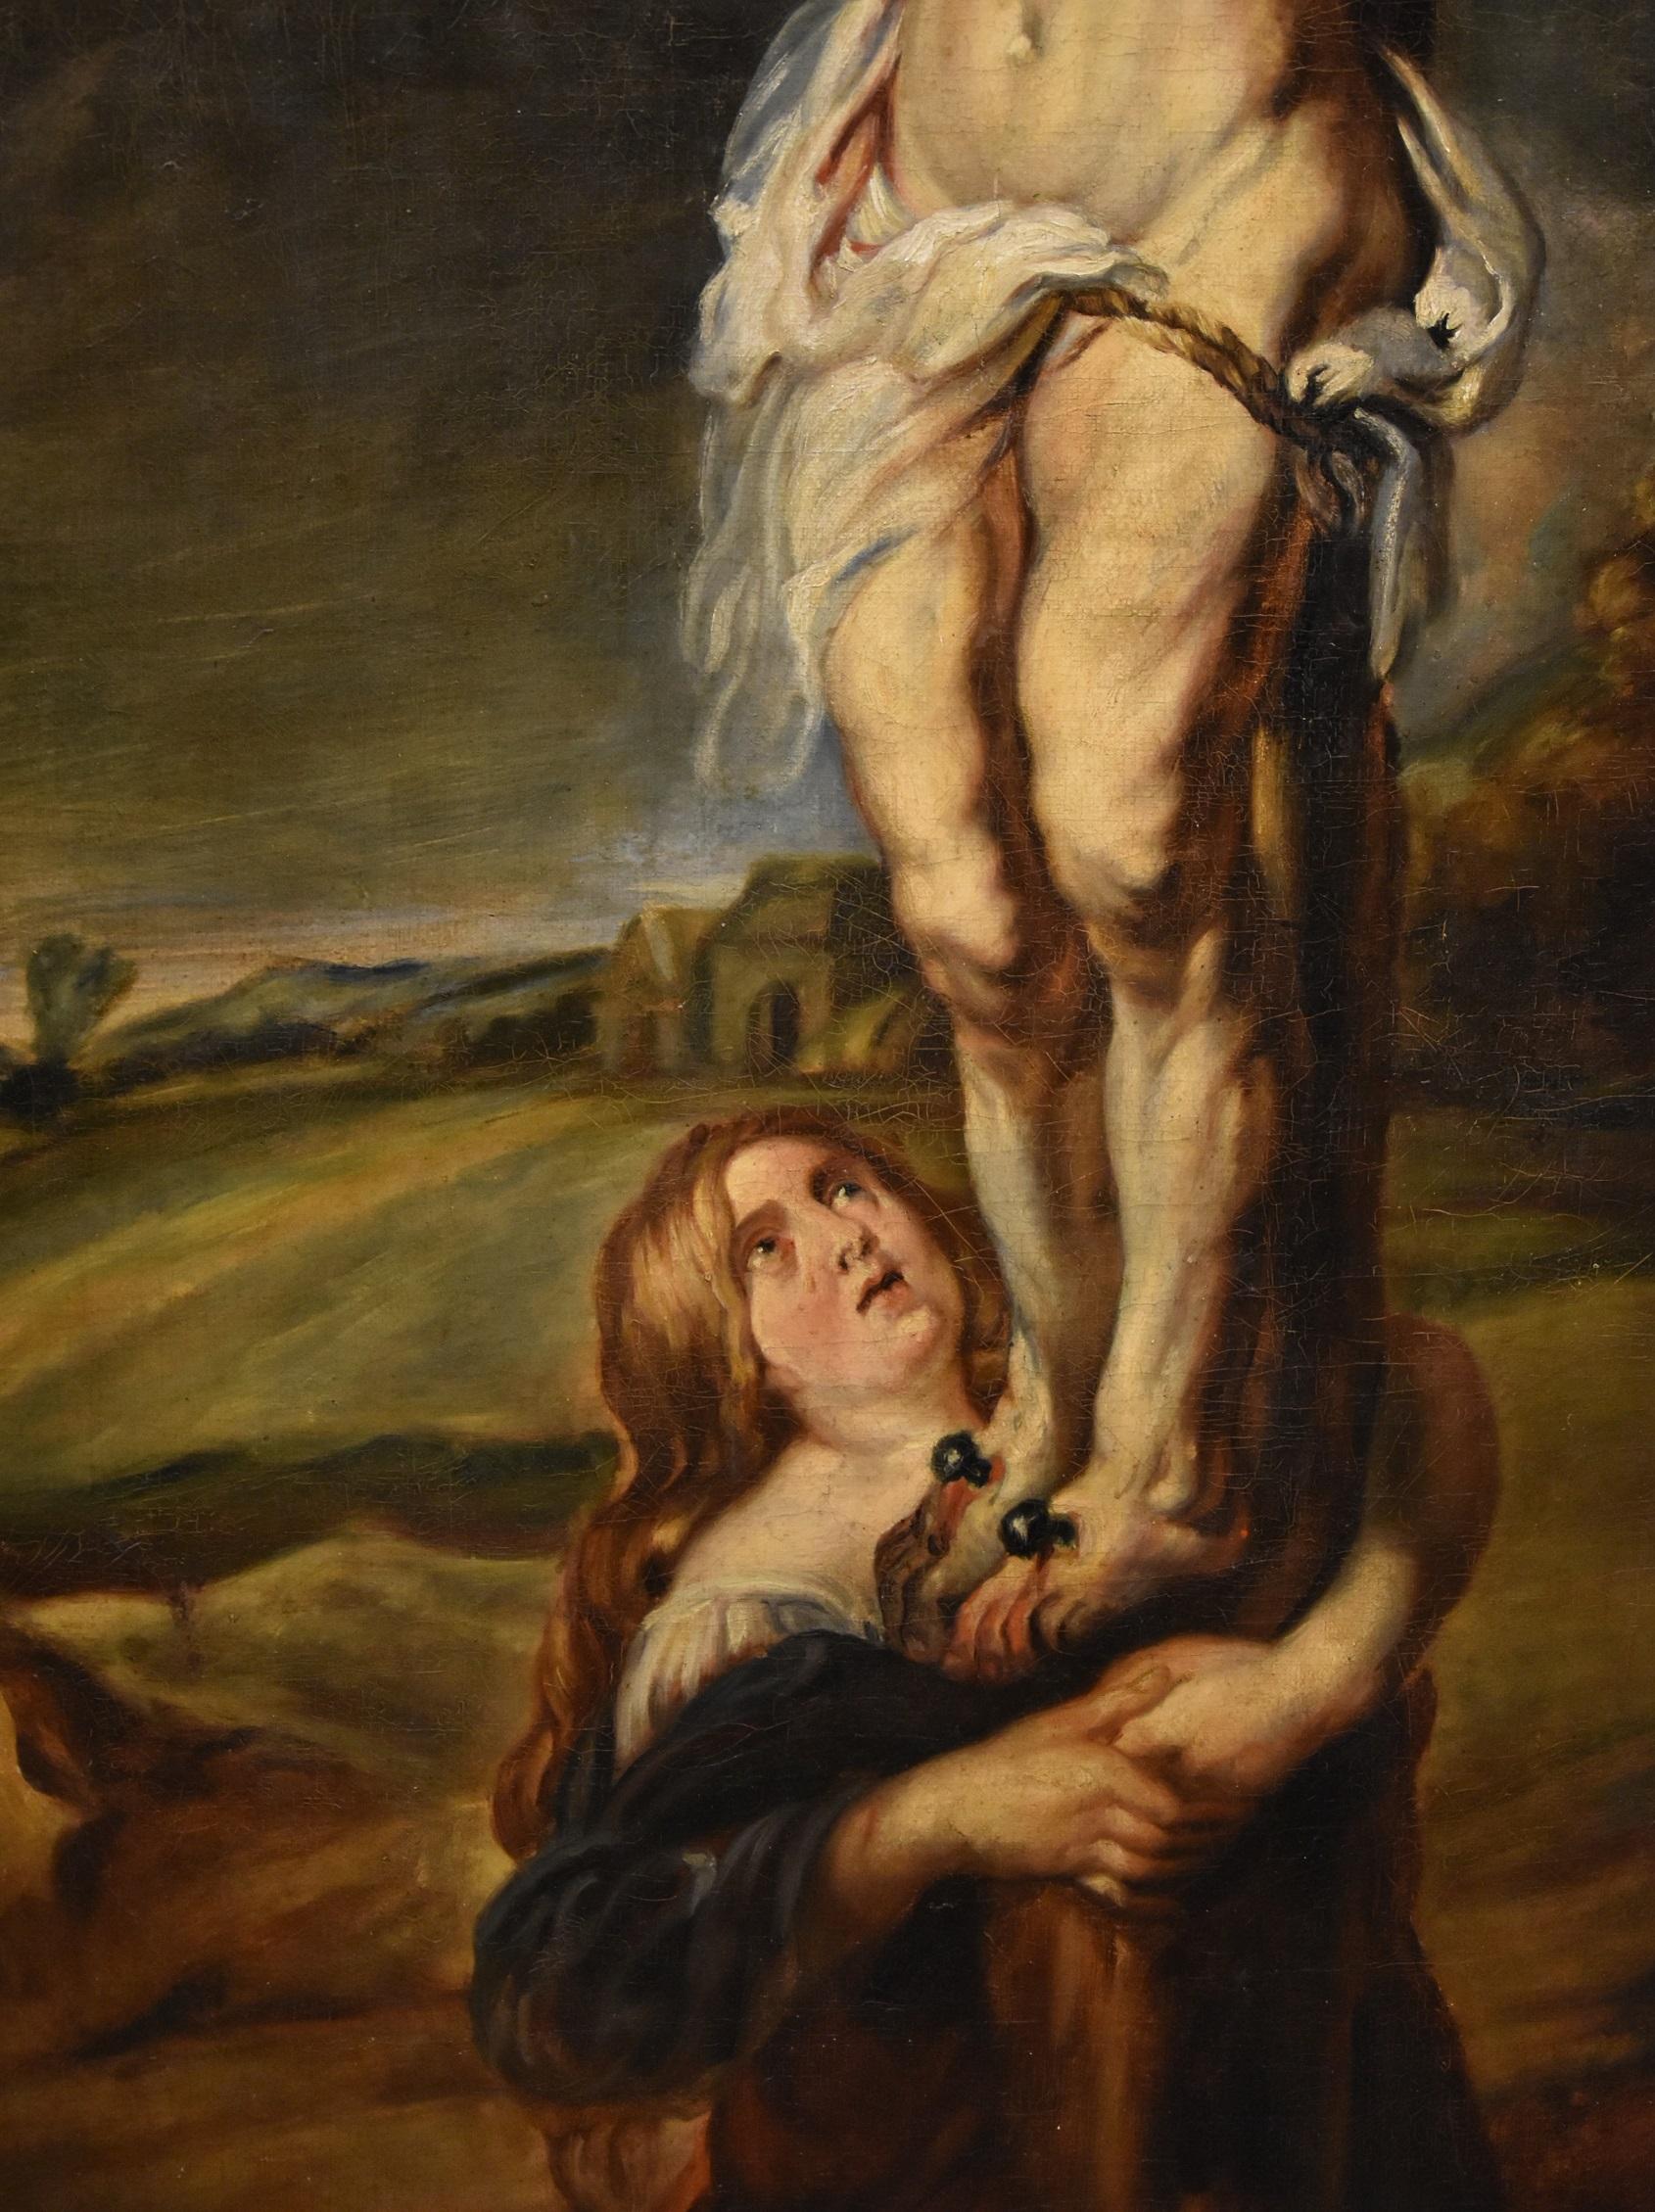 Peters Paul Rubens (Siegen 1577 - Anvers 1640) Atelier / cercle
Crucifixion du Christ avec Sainte Marie-Madeleine

Peinture à l'huile sur toile
112 x 62 cm. - Dans un cadre ancien 126 x 73 cm.

Tous les détails relatifs à cette peinture peuvent être